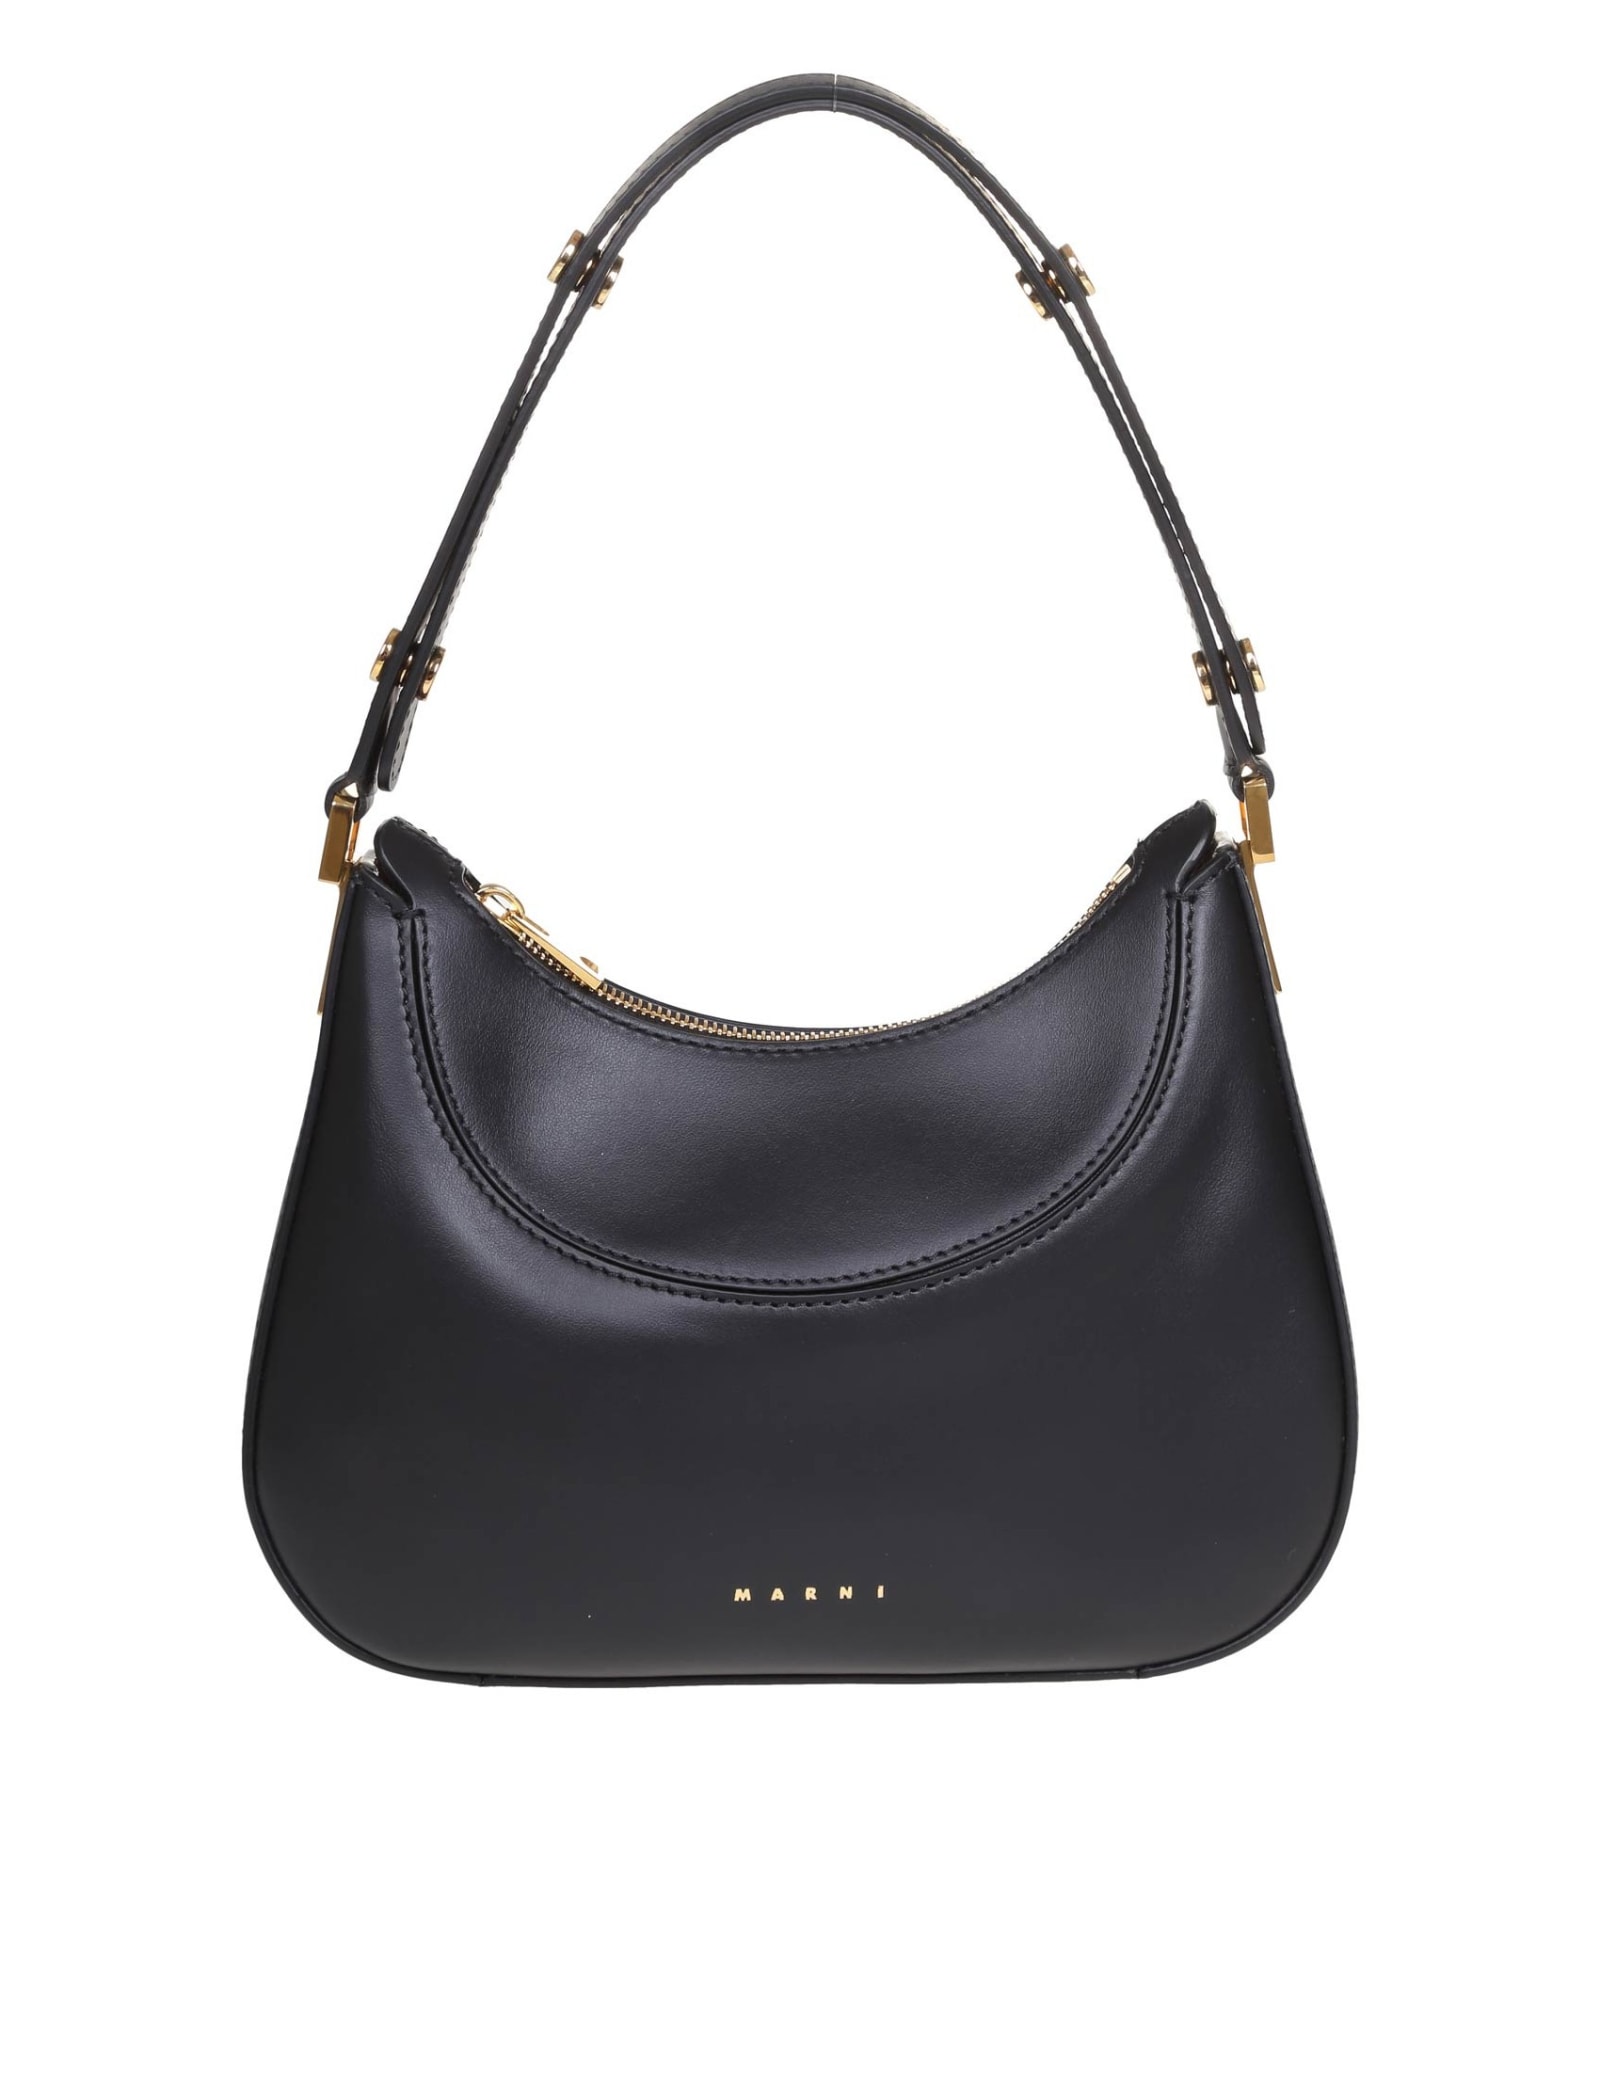 Marni Milano Mini Leather Hobo Bag In Black | ModeSens